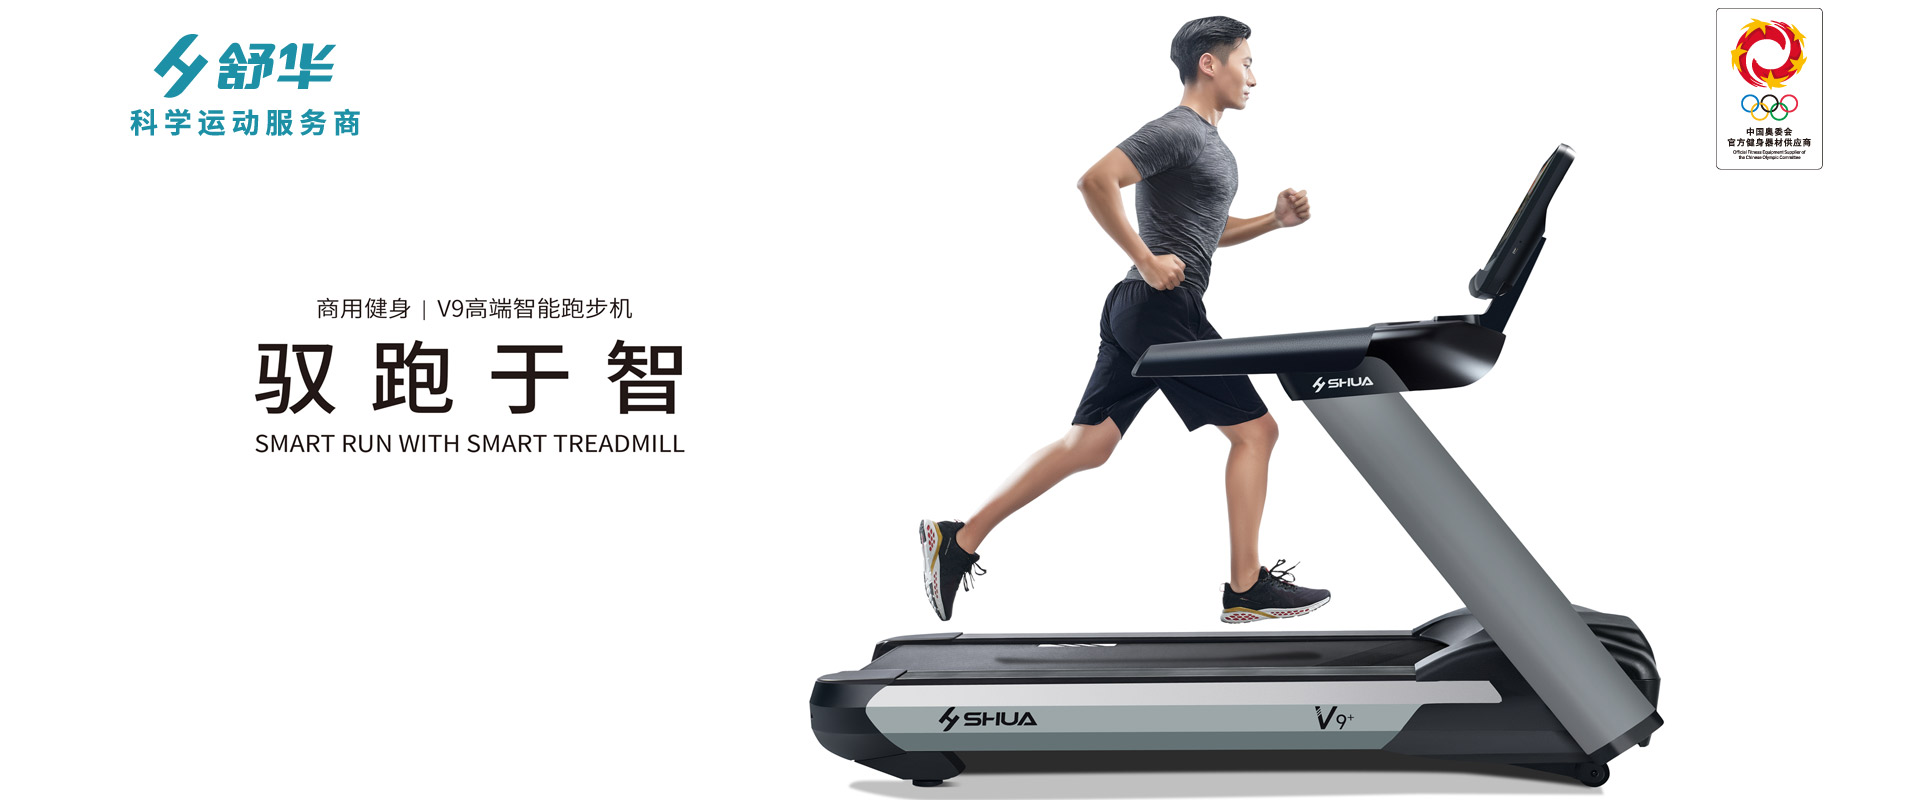 新V9+商用跑步机